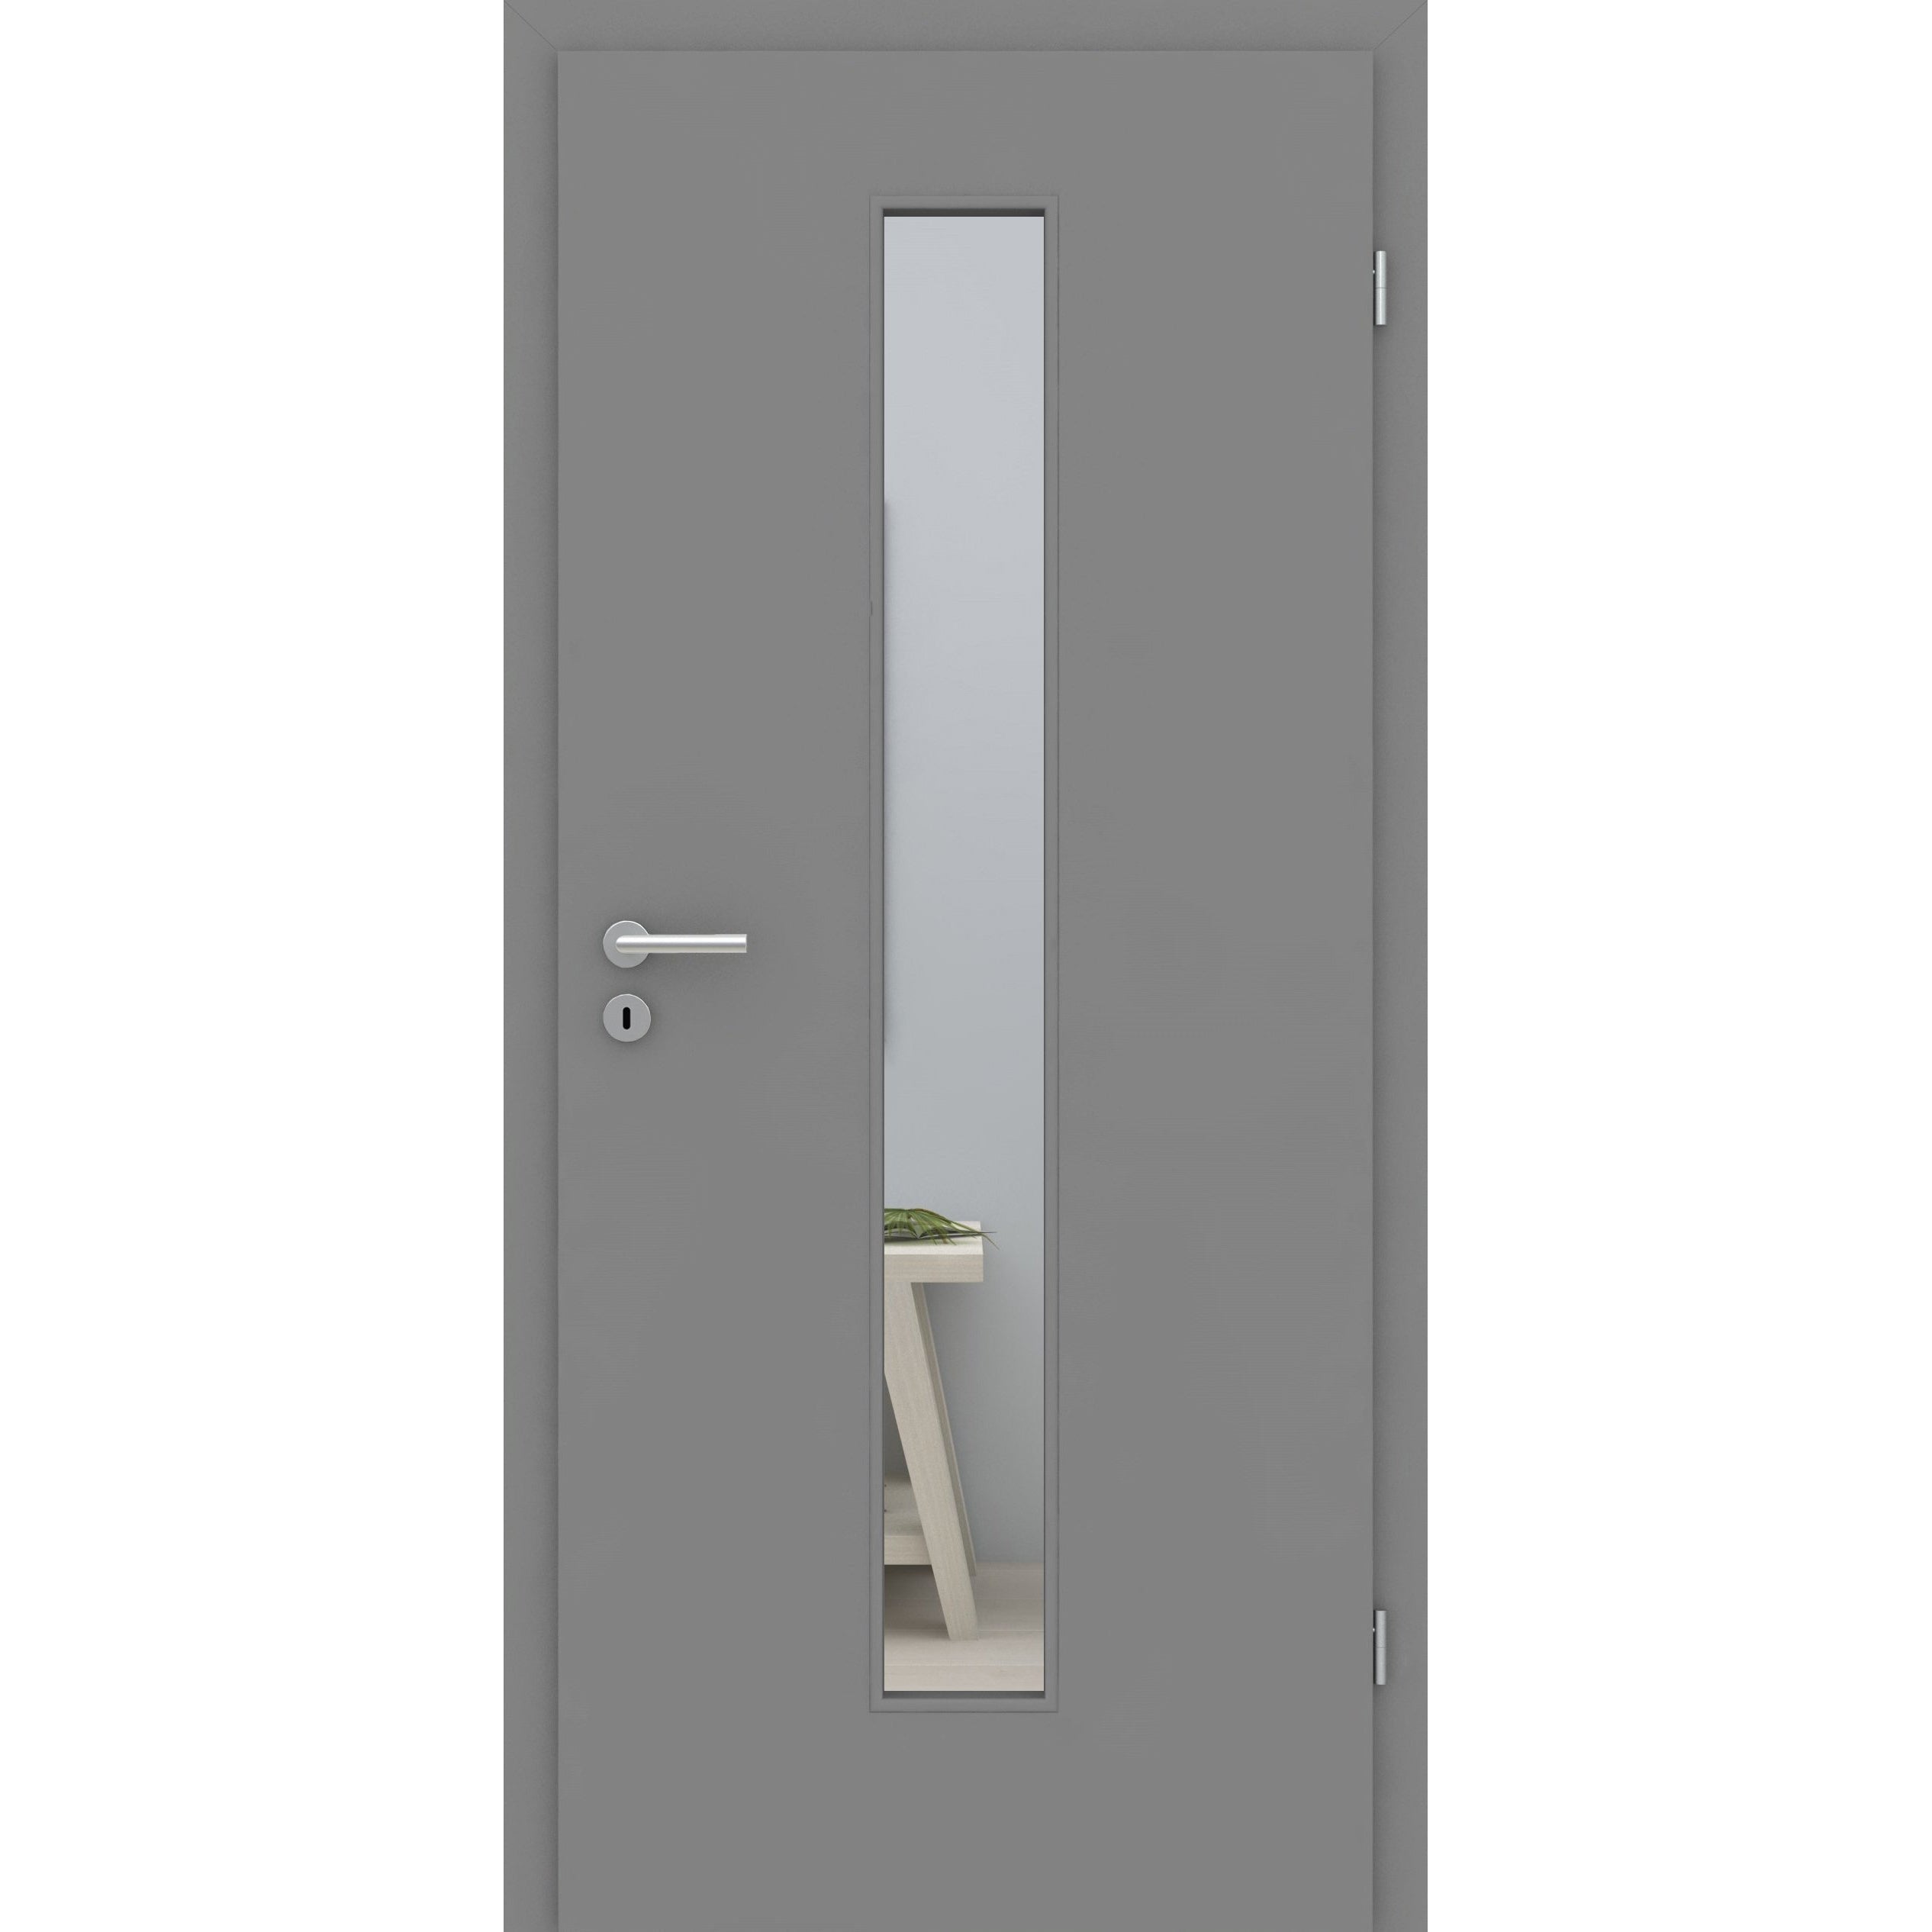 Zimmertür mit Zarge und Lichtausschnitt grau glatt Designkante LAM